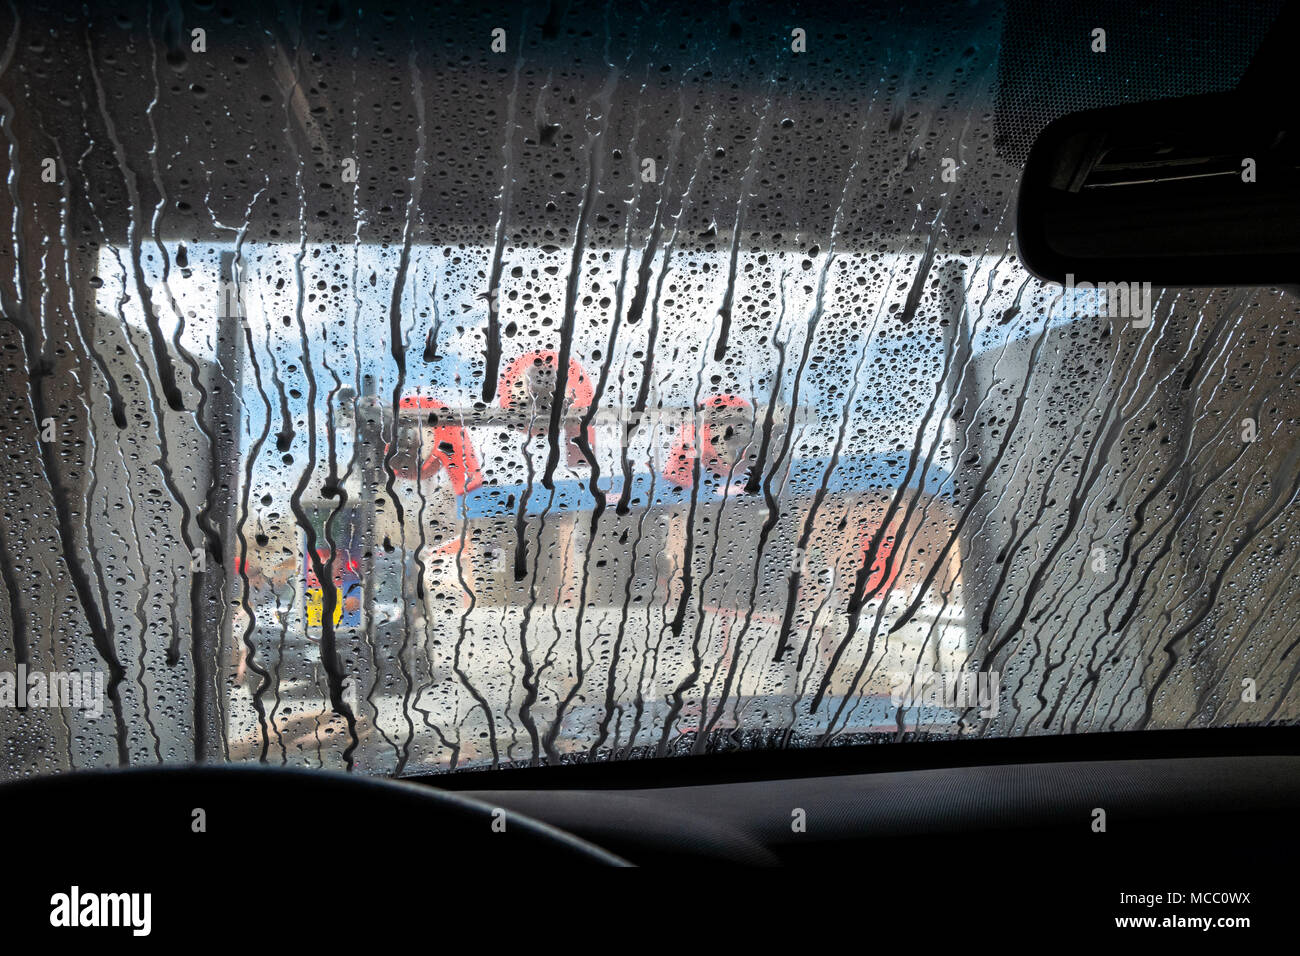 Vue à travers le pare-brise auto, lavage de voiture Banque D'Images